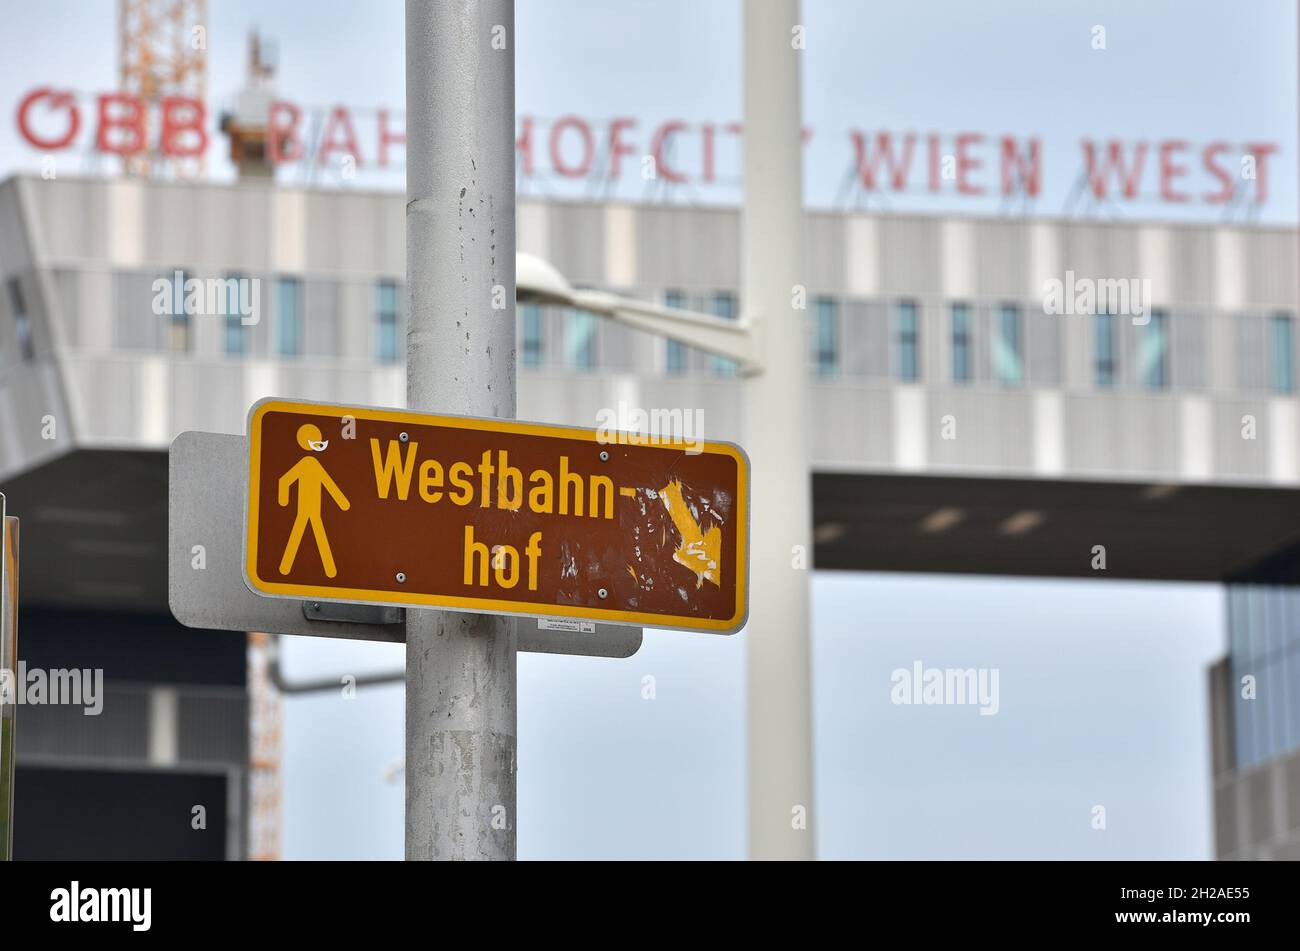 Beschriftung auf dem Westbahnhof à Wien, Österreich, Europa - Lettering on the Westbahnhof à Vienne, Autriche, Europe Banque D'Images